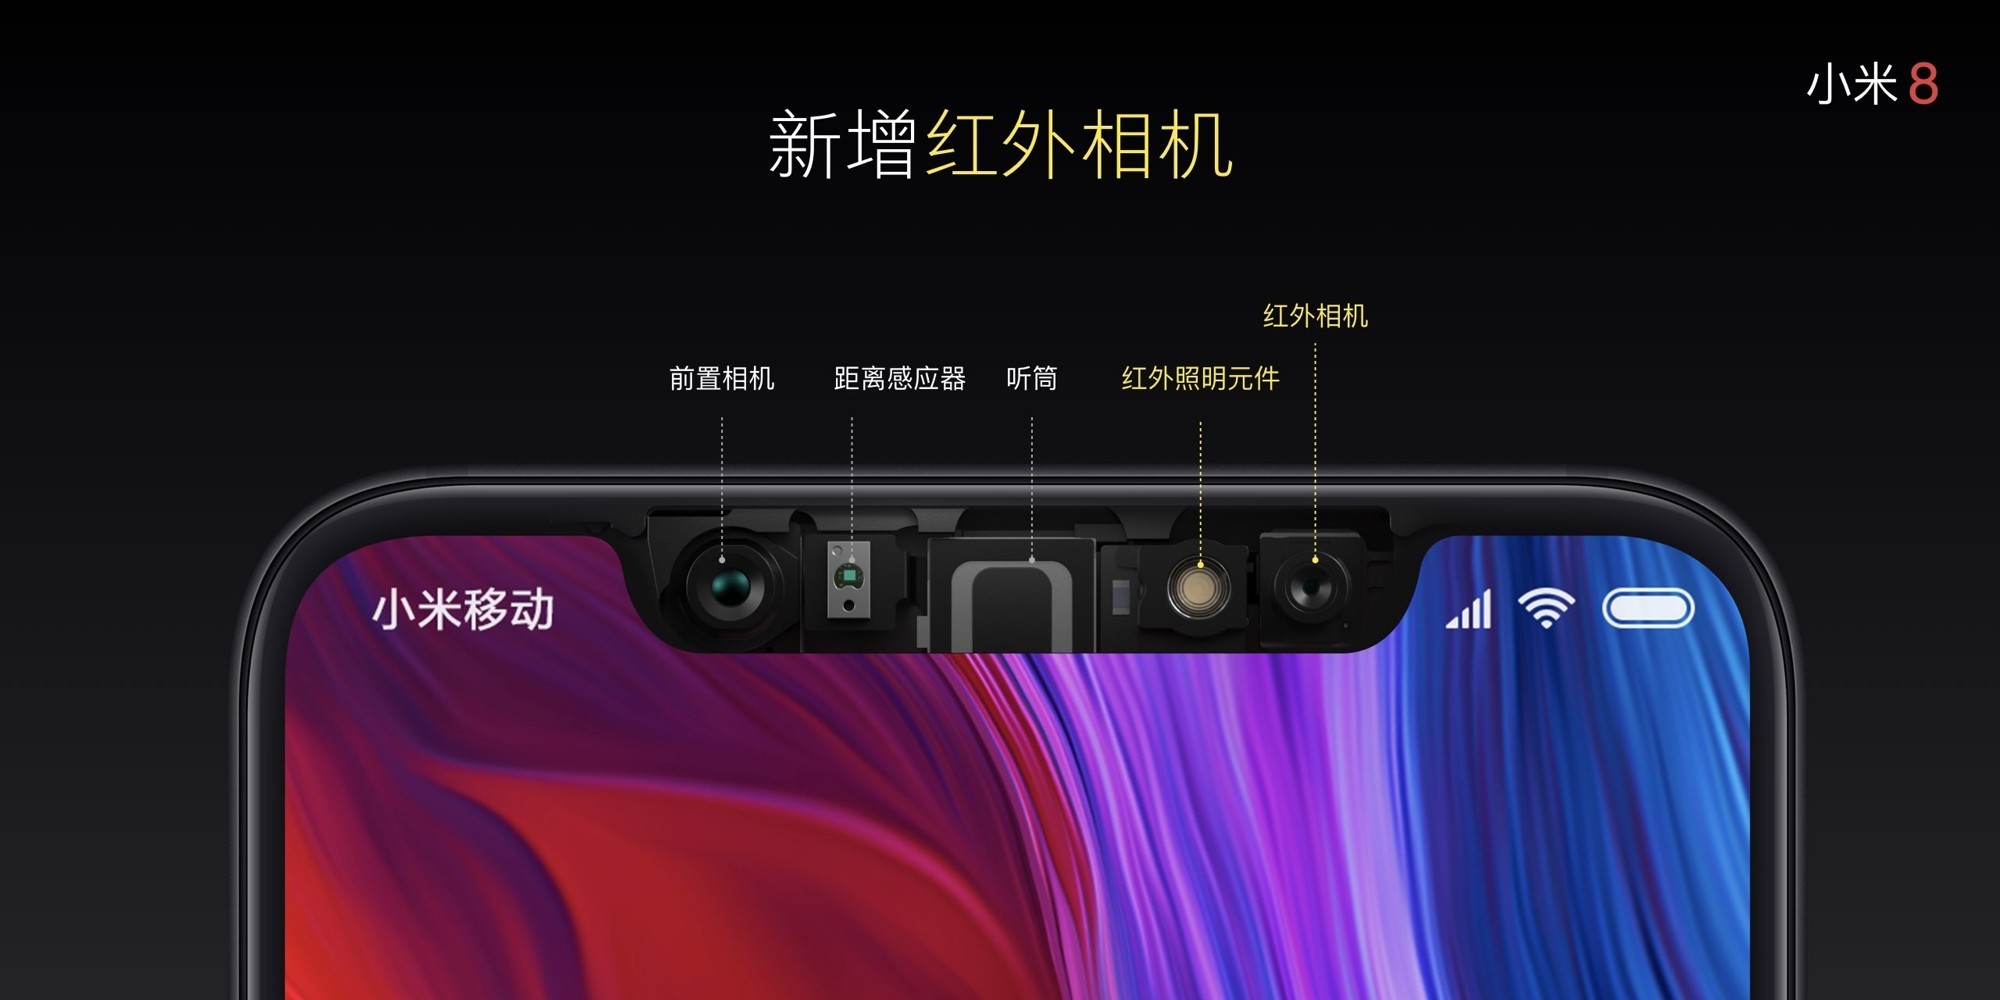 Xiaomi представила новый смартфон Xiaomi Mi 8 с 3D-сканером лица